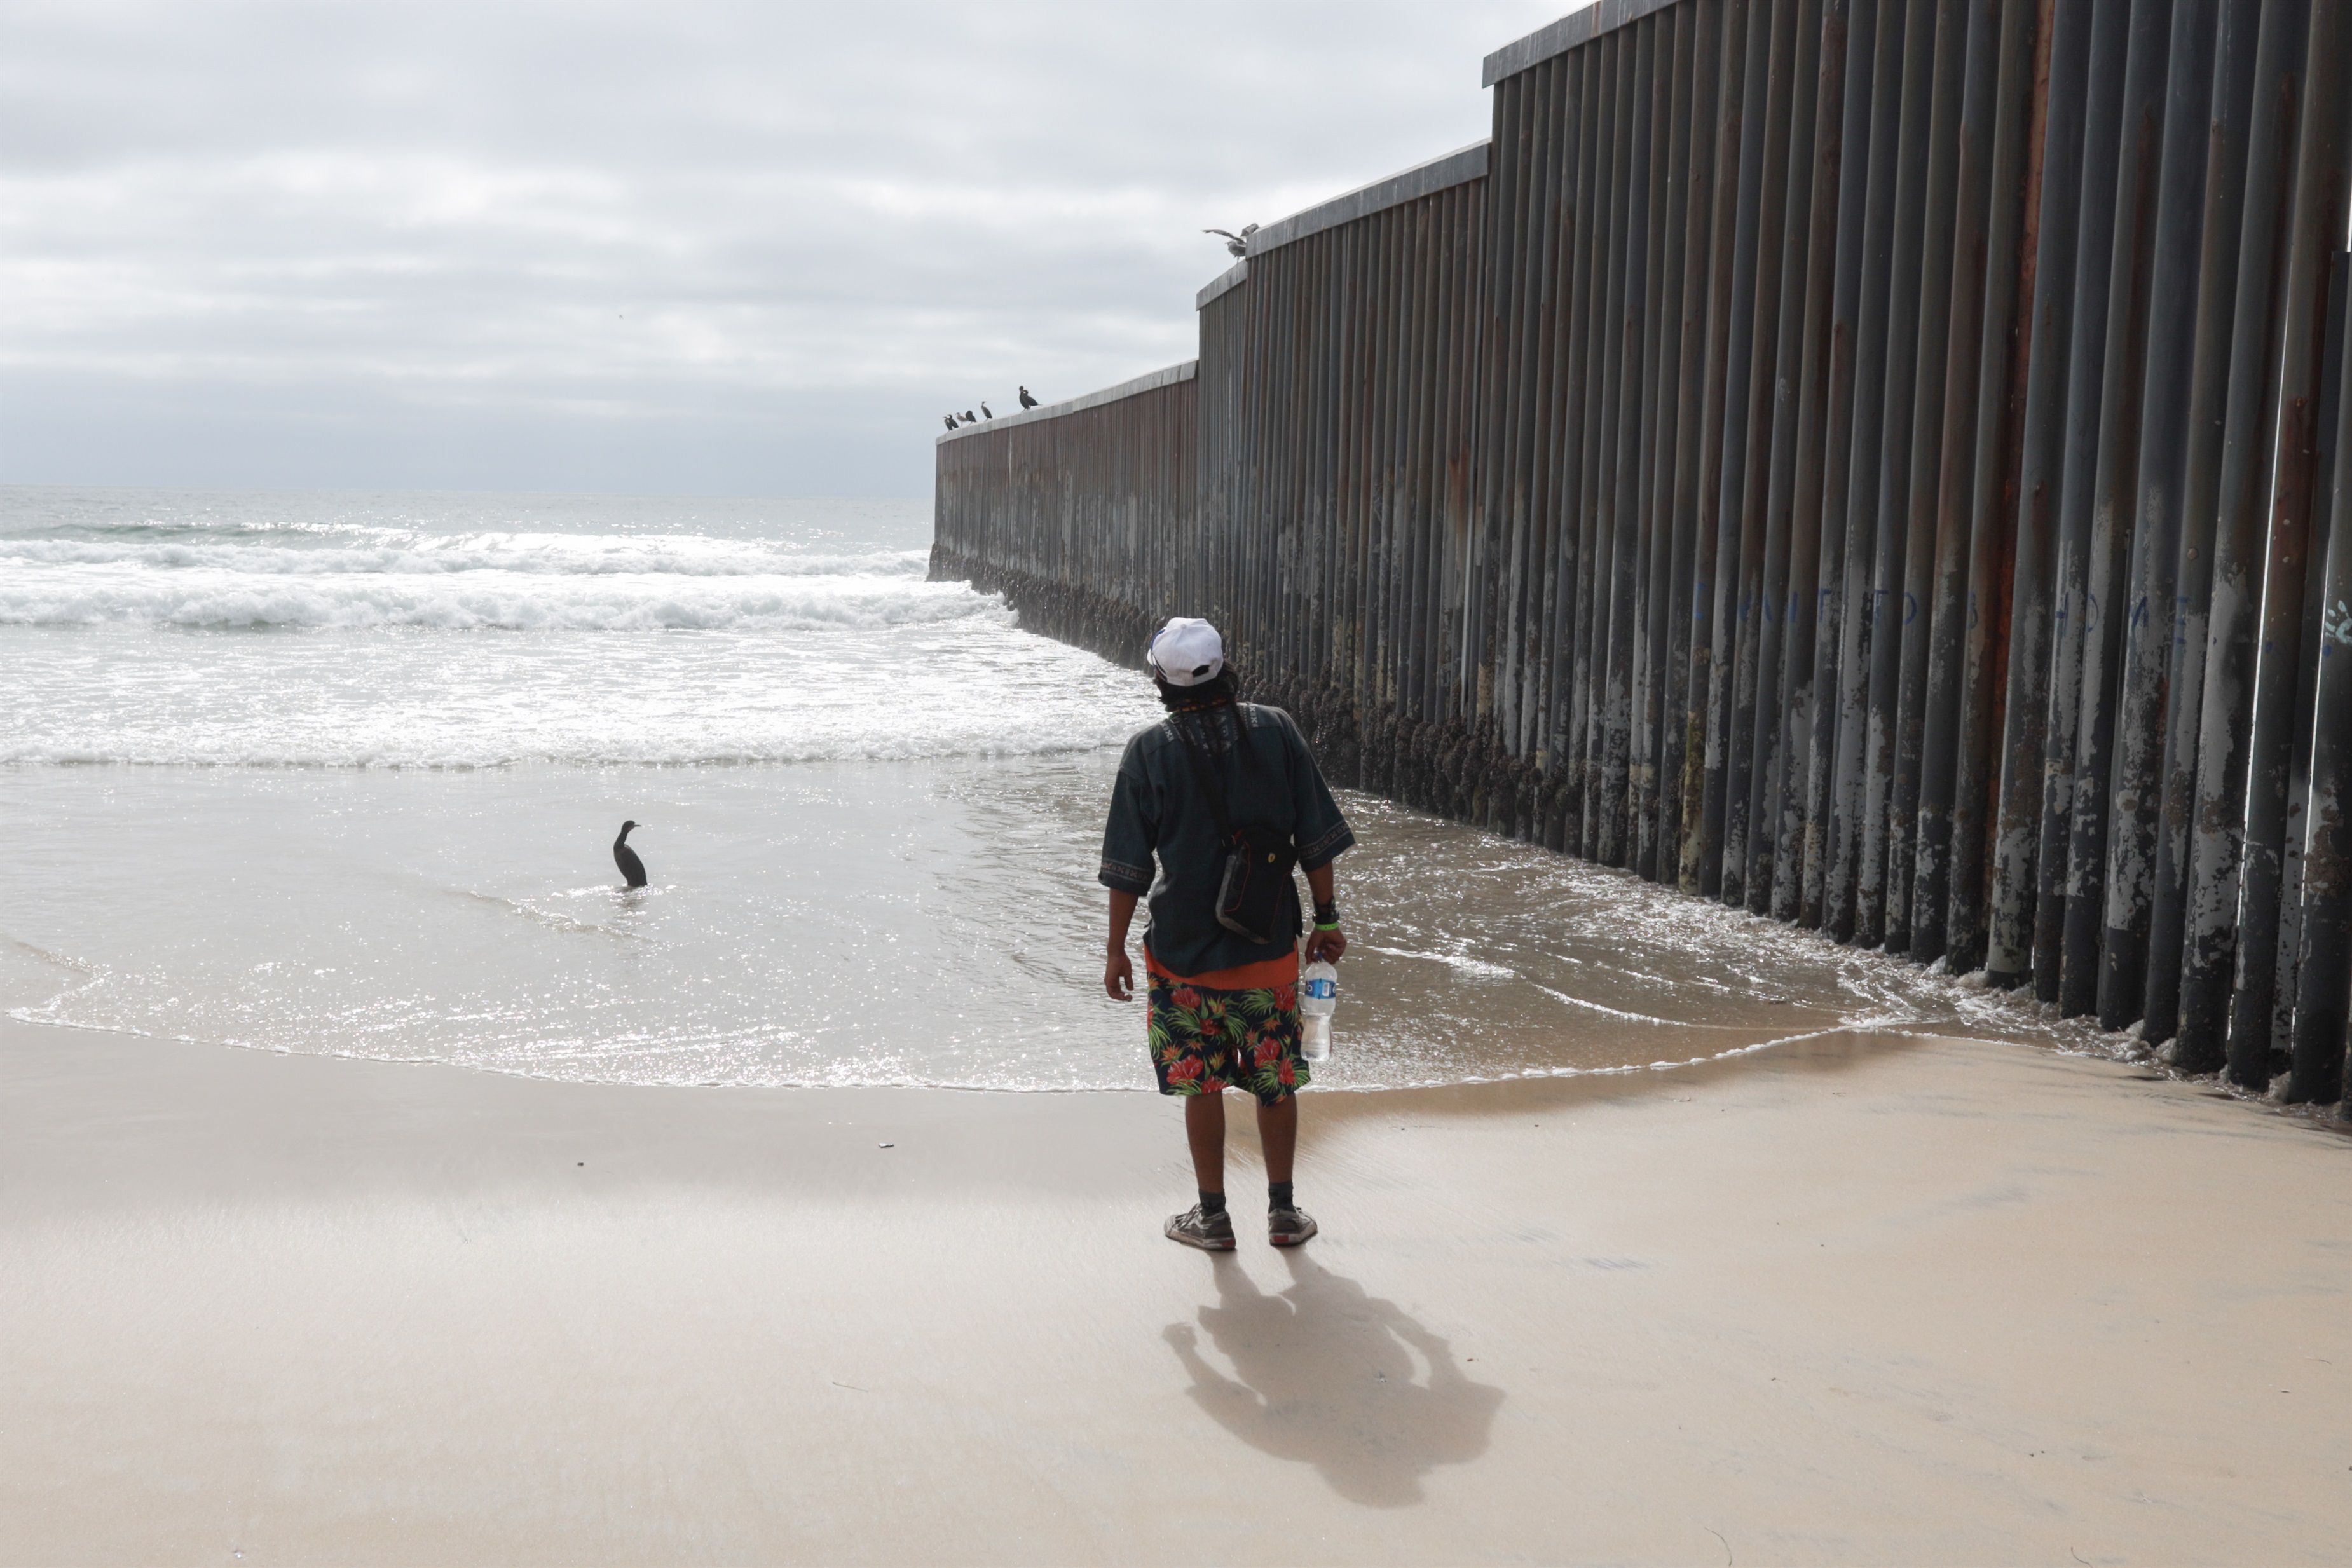 05/08/2020 Migrante en el muro de separación con EEUU POLITICA NORTEAMÉRICA ESTADOS UNIDOS INTERNACIONAL DAVID PEINADO / ZUMA PRESS / CONTACTOPHOTO 